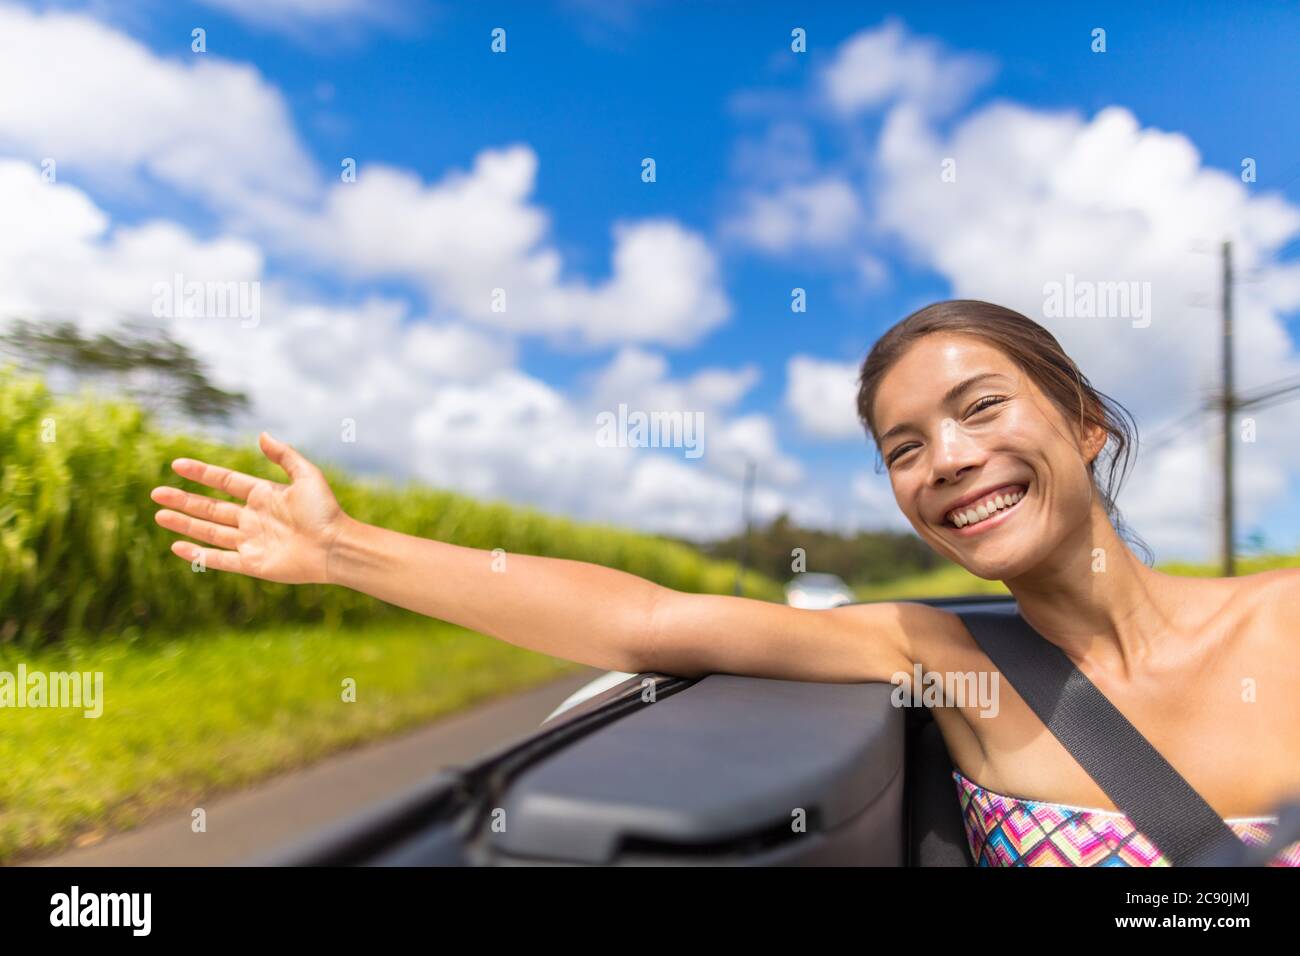 Voiture Road trip femme liberté avec la main flottant dans le vent. Fille asiatique assis dans une voiture convertible sans souci profiter de vacances de voyage avec bras Banque D'Images